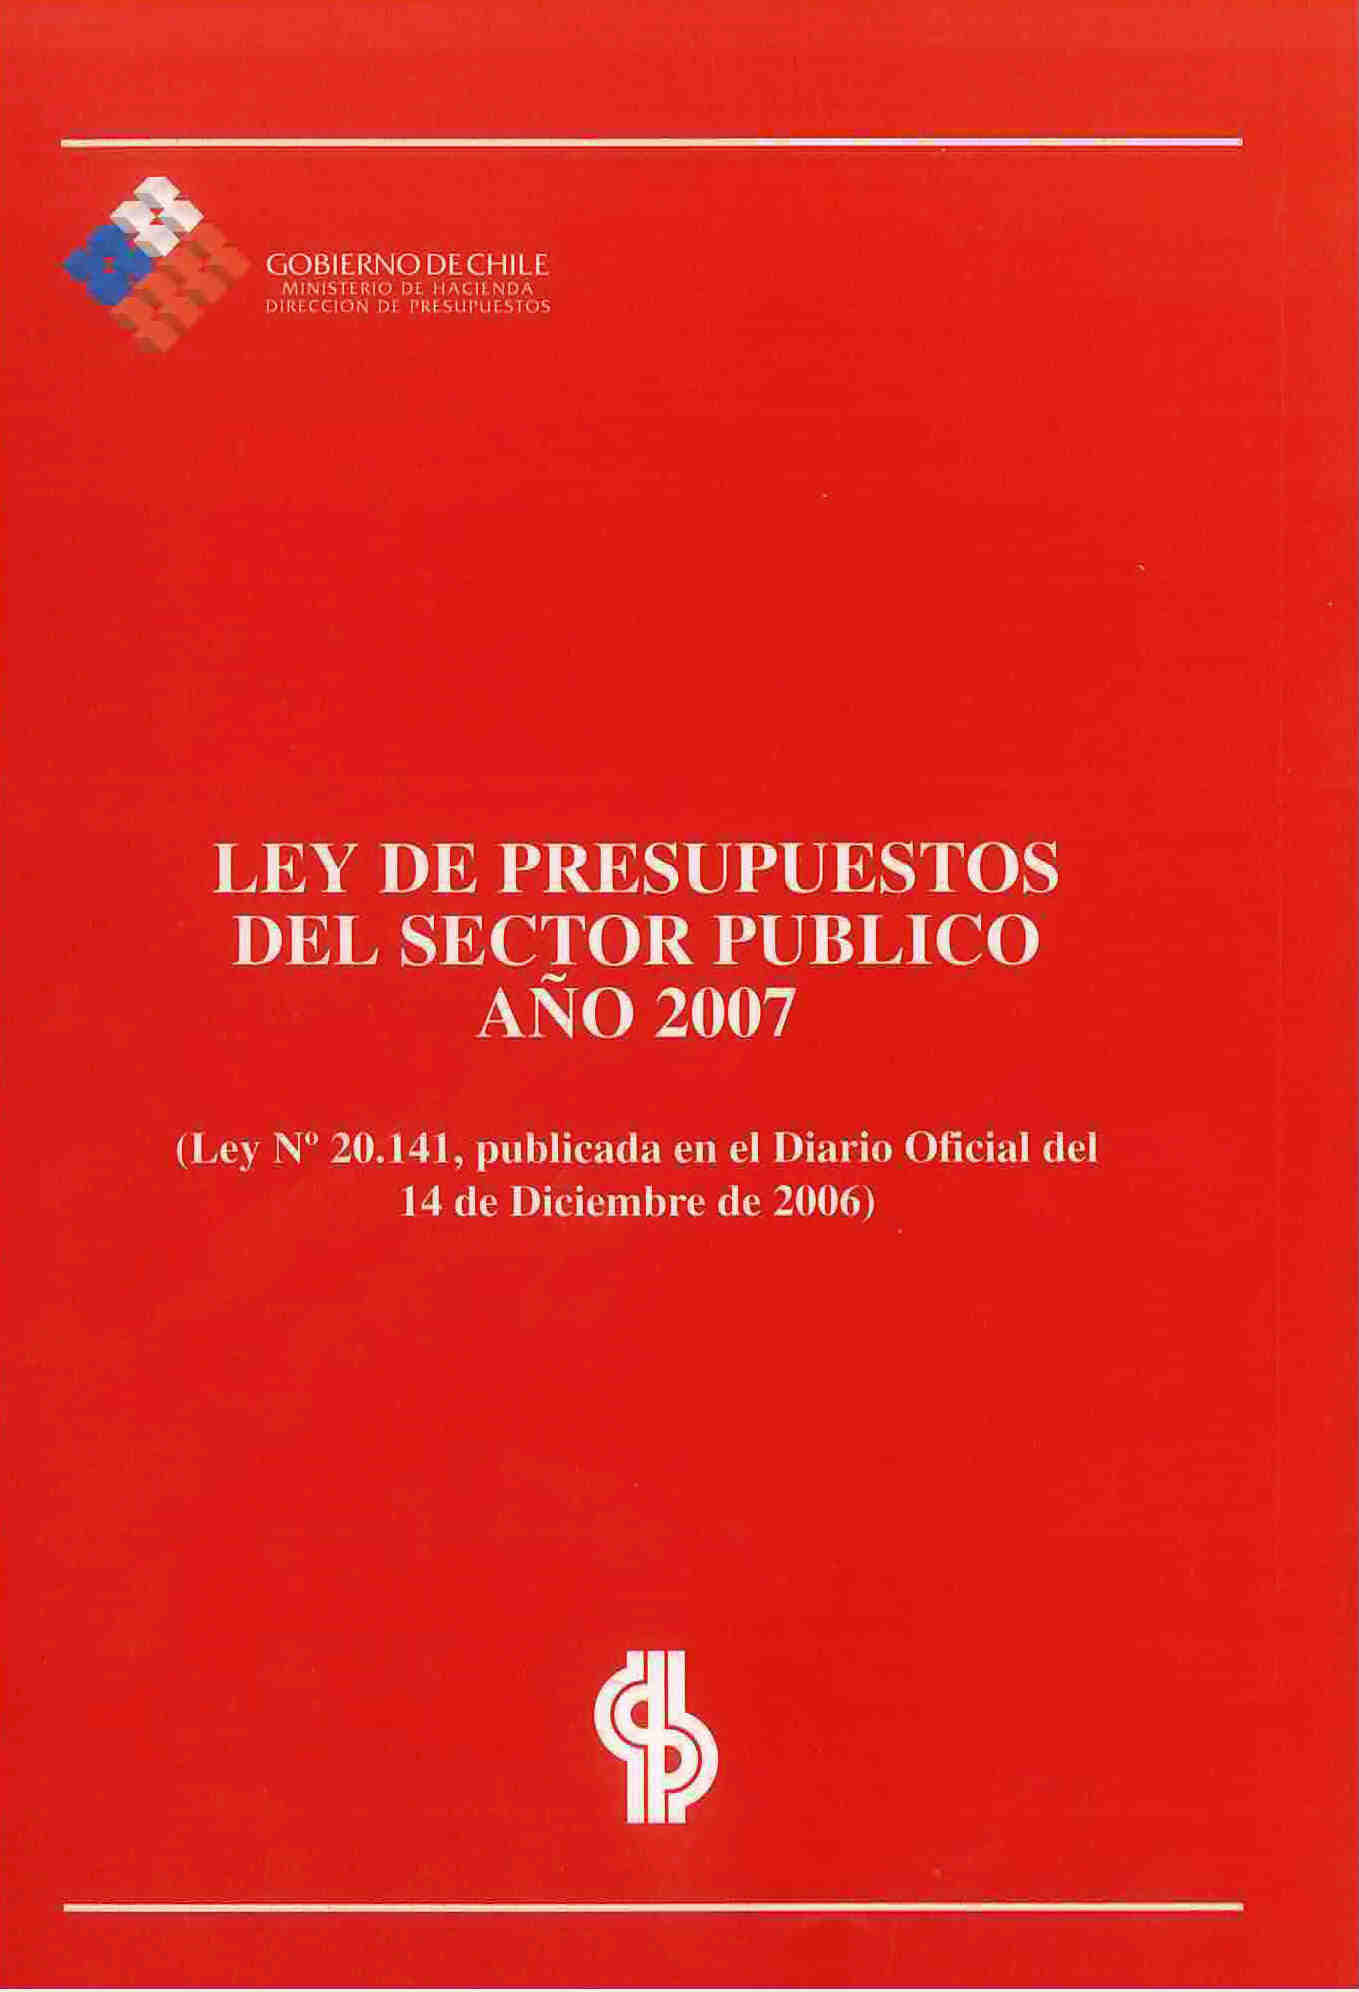 Ley de presupuestos del sector público año 2007. Ley N° 20.141. Publicada en el diario oficial de 14 de diciembre de 2006